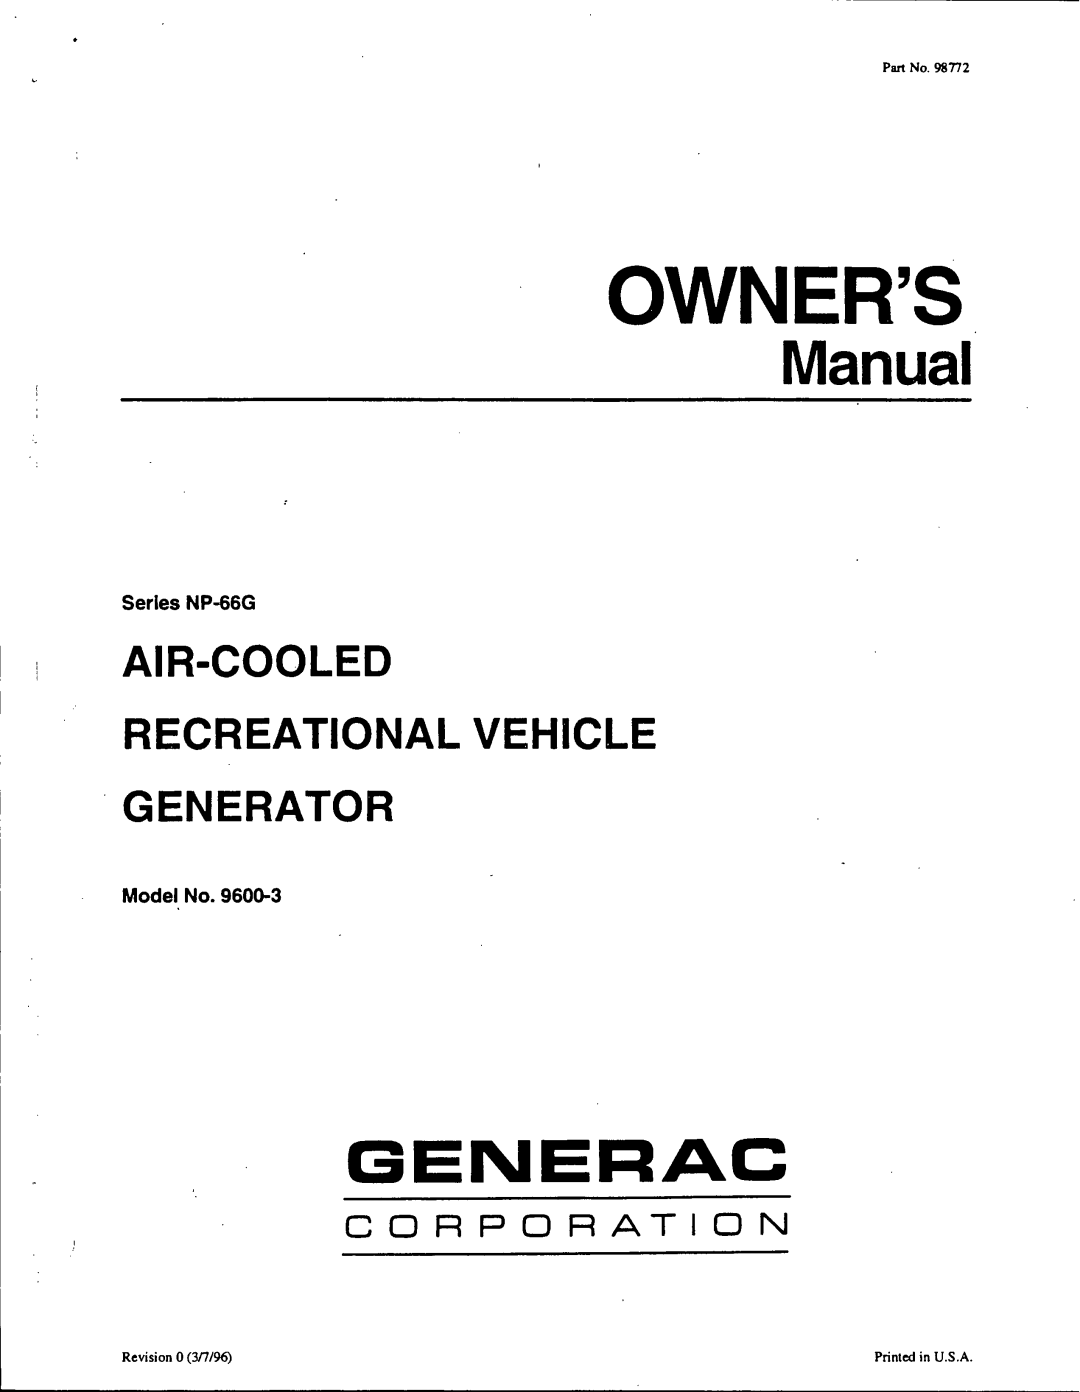 Generac 9600-3 manual 